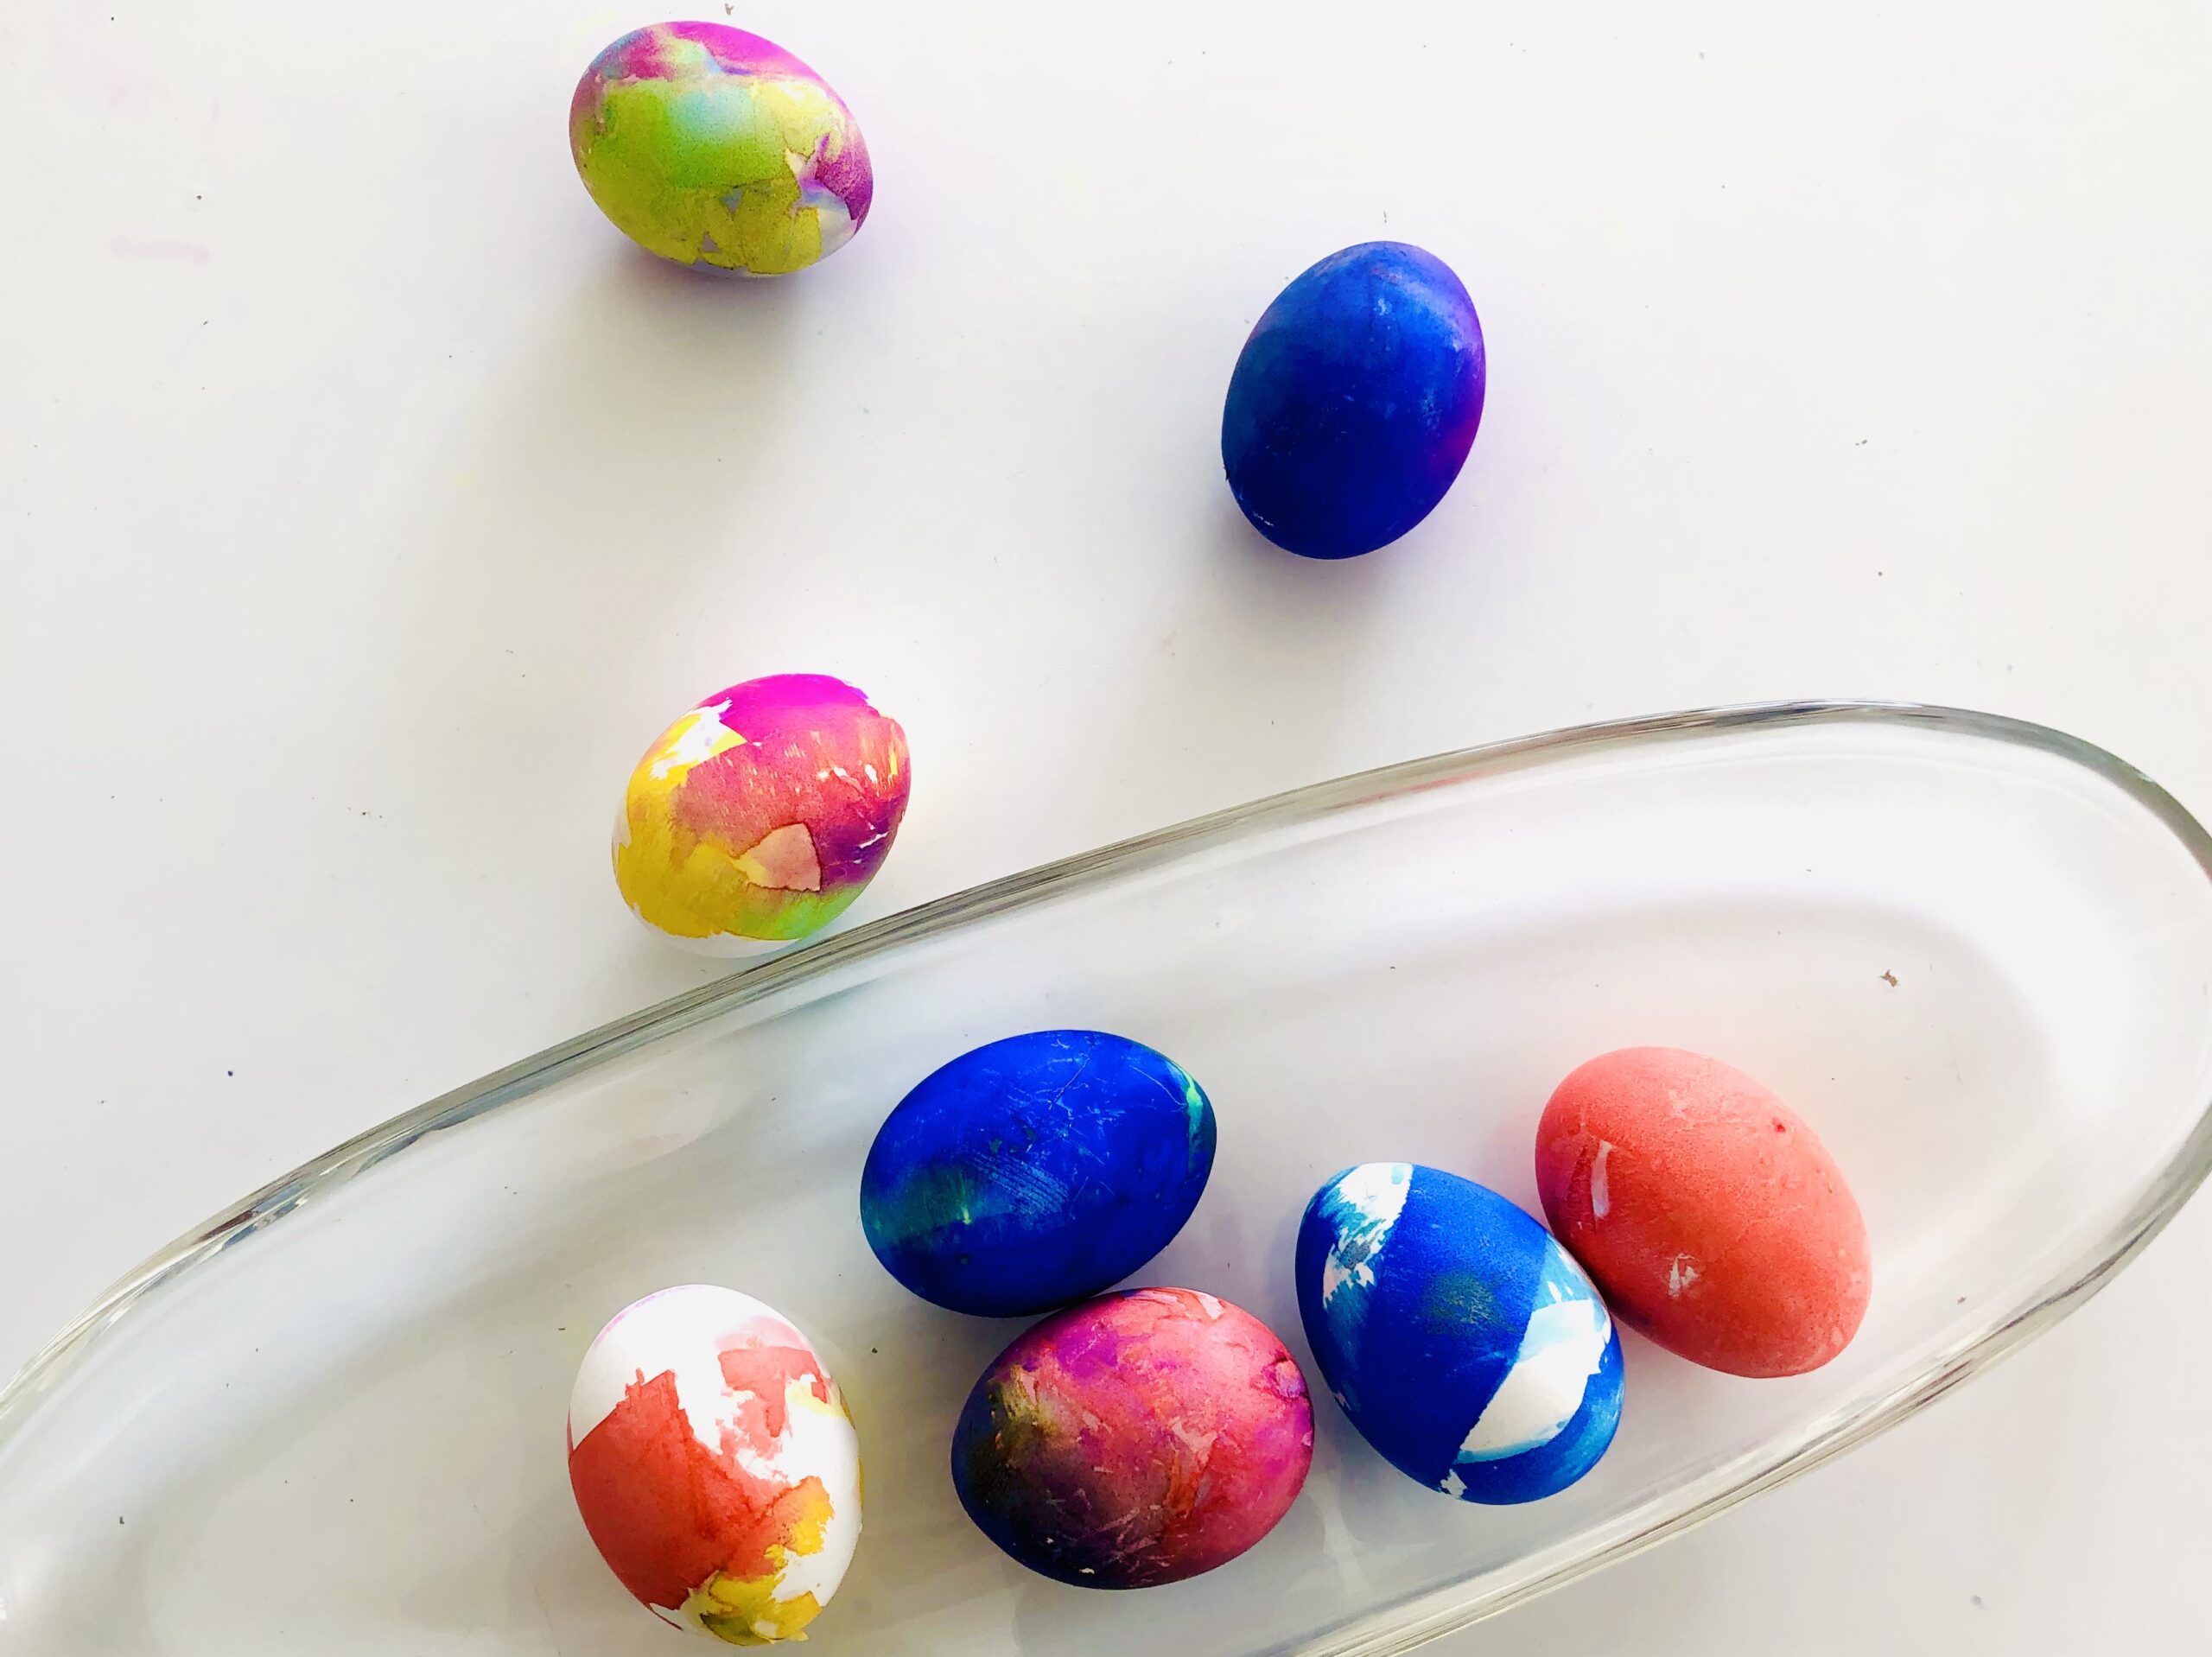 Bild zum Schritt 11 für das Bastel- und DIY-Abenteuer für Kinder: 'Die Eier leuchten in schönen bunten Farben.'